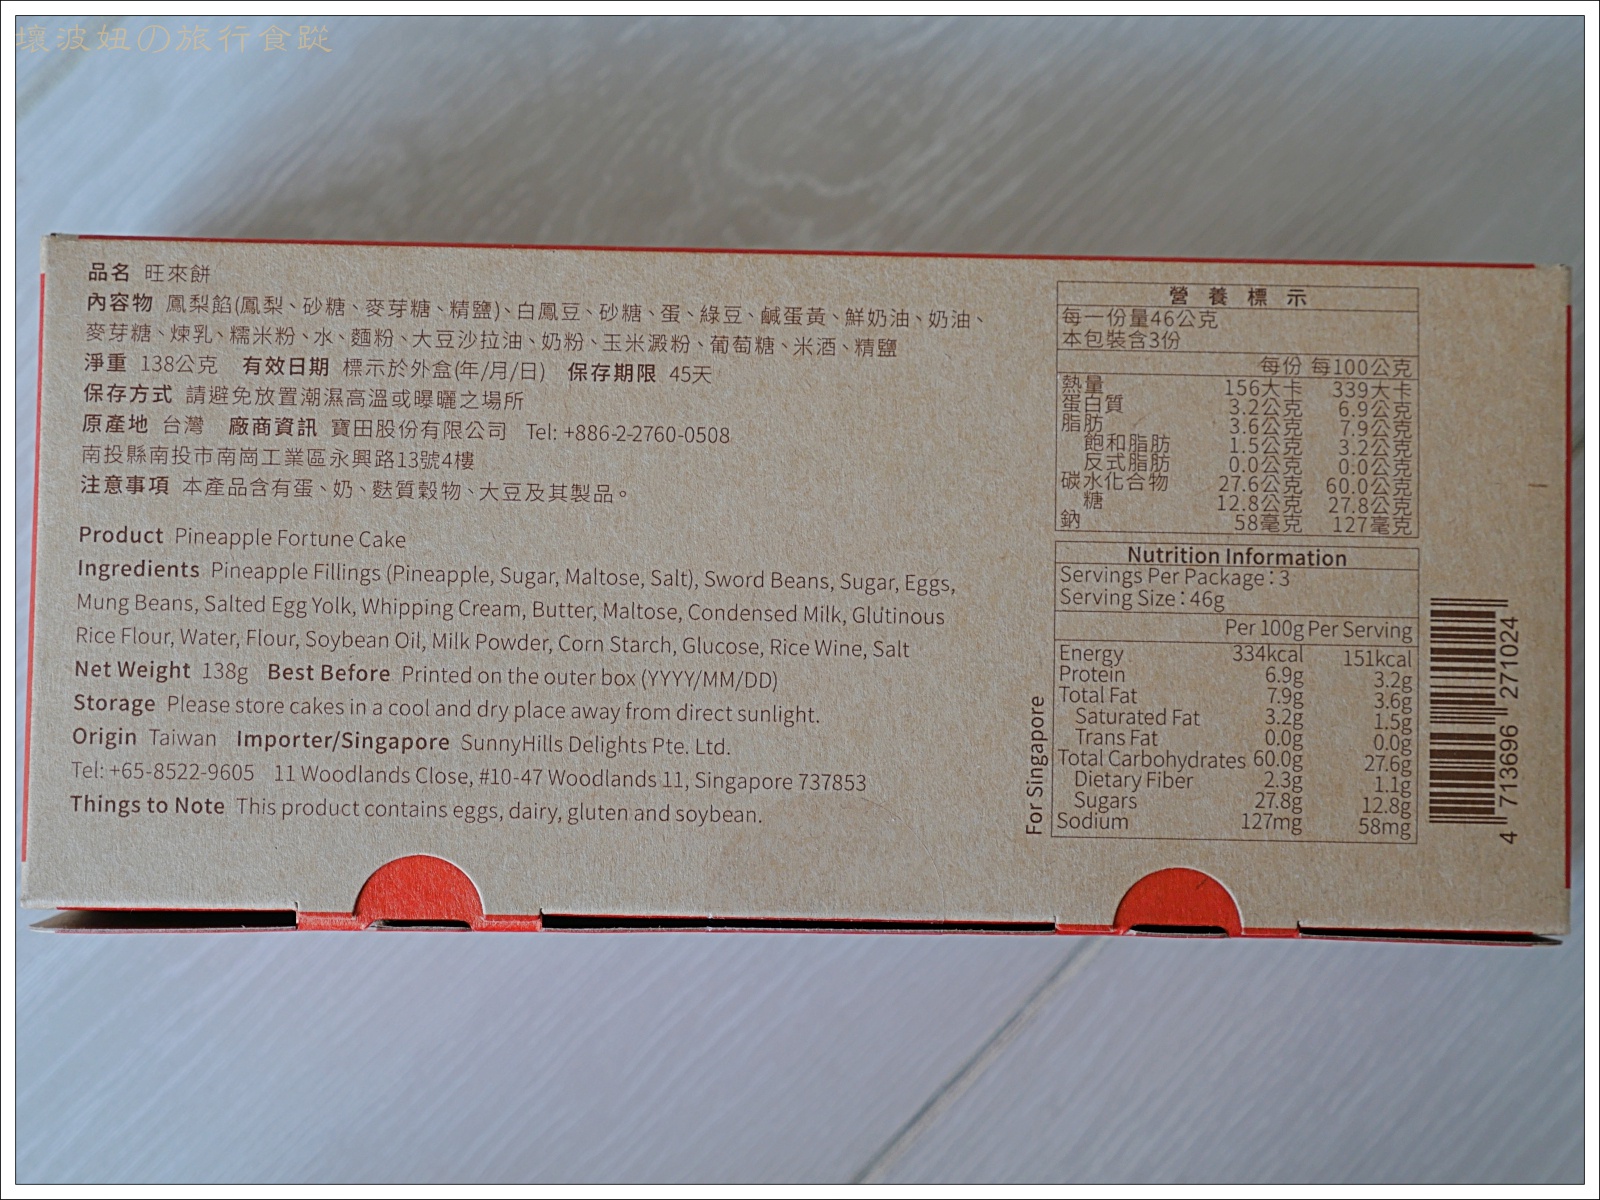 微熱山丘禮盒,微熱山丘過年禮盒,日本人喜歡的伴手禮,日本伴手禮,鳳梨酥禮盒 @壞波妞の旅行食踨